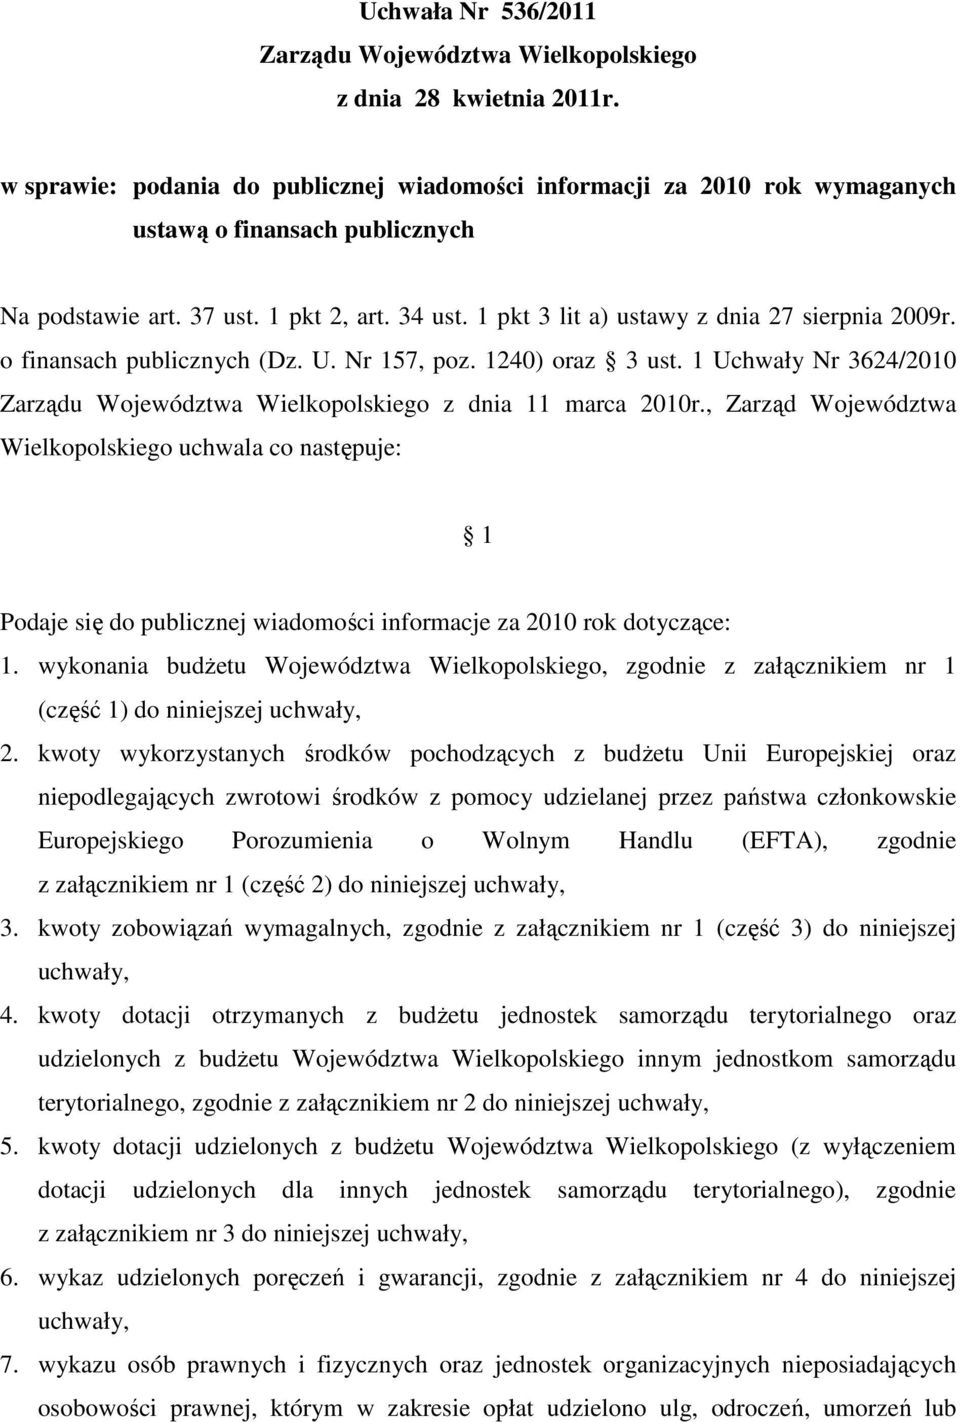 1 pkt 3 lit a) ustawy z dnia 27 sierpnia 2009r. o finansach publicznych (Dz. U. Nr 157, poz. 1240) oraz 3 ust. 1 Uchwały Nr 3624/2010 Zarządu Województwa Wielkopolskiego z dnia 11 marca 2010r.